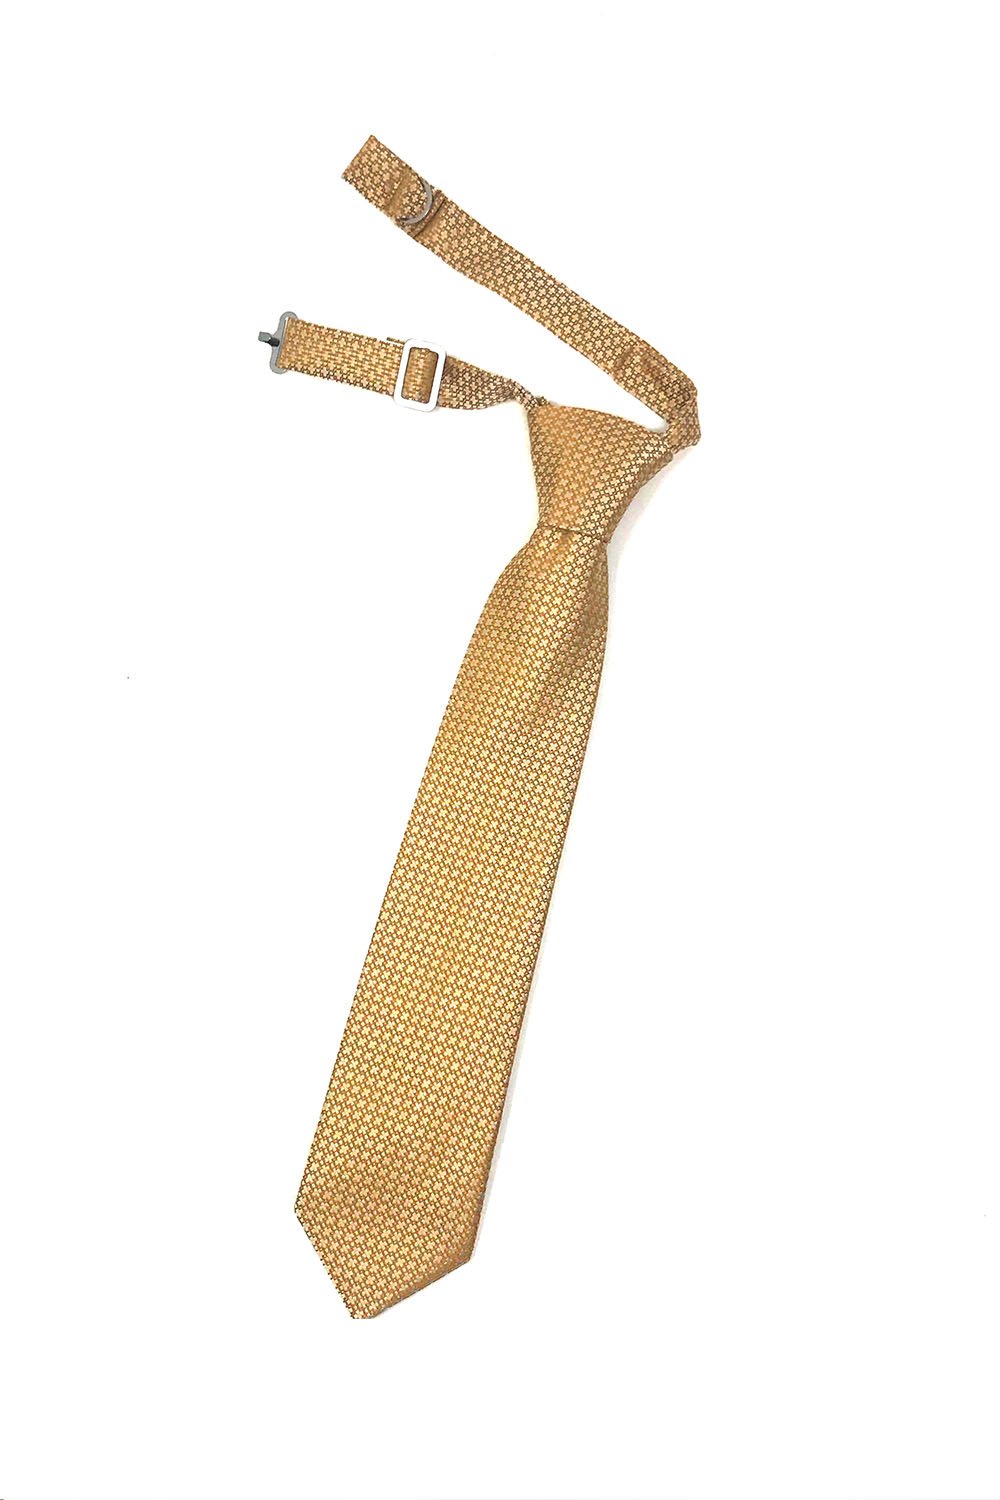 Cardi Gold Regal Kids Necktie